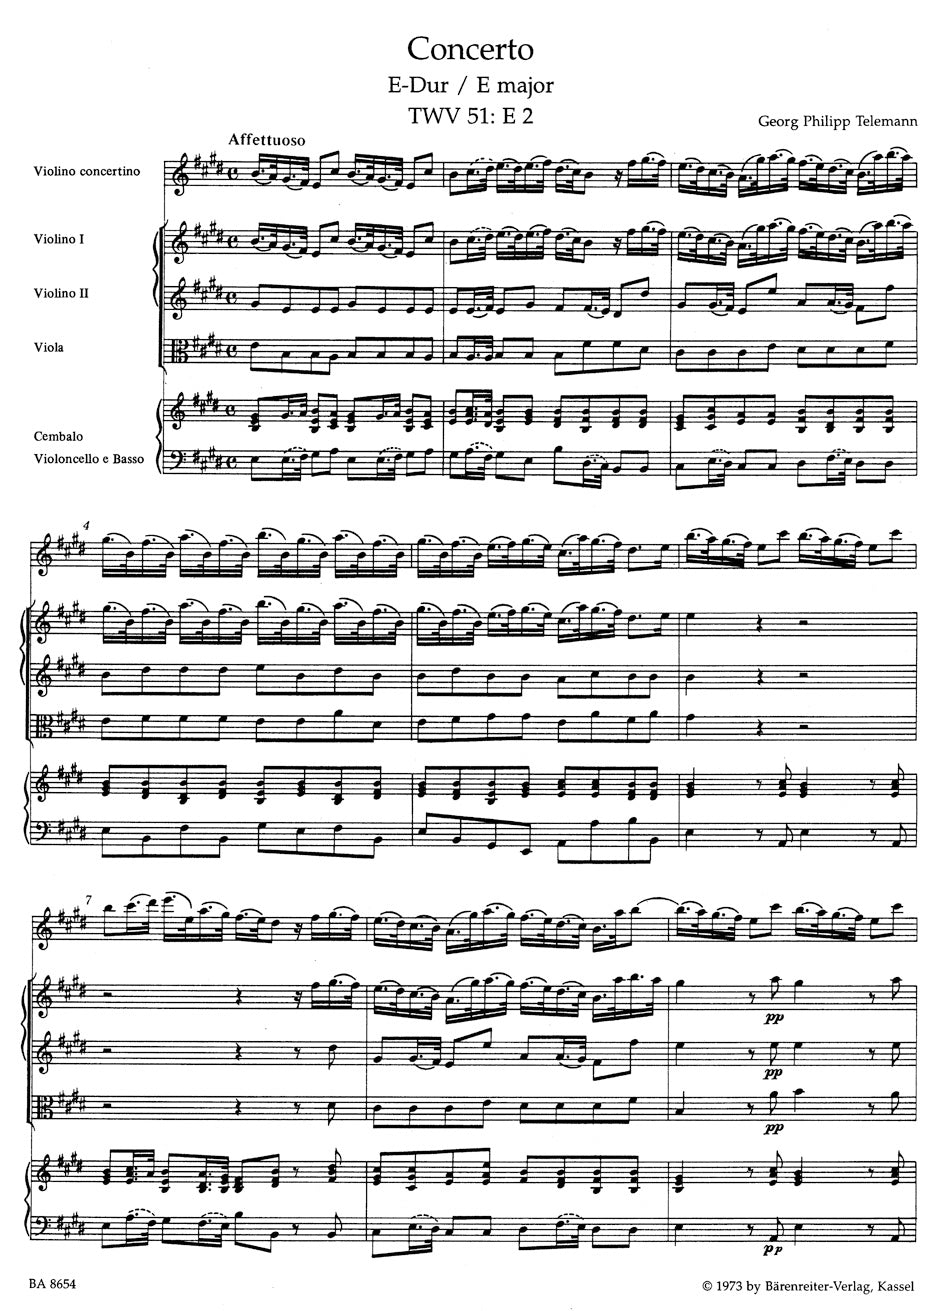 Telemann Concerto for Violin and Orchestra E major TWV 51:E2